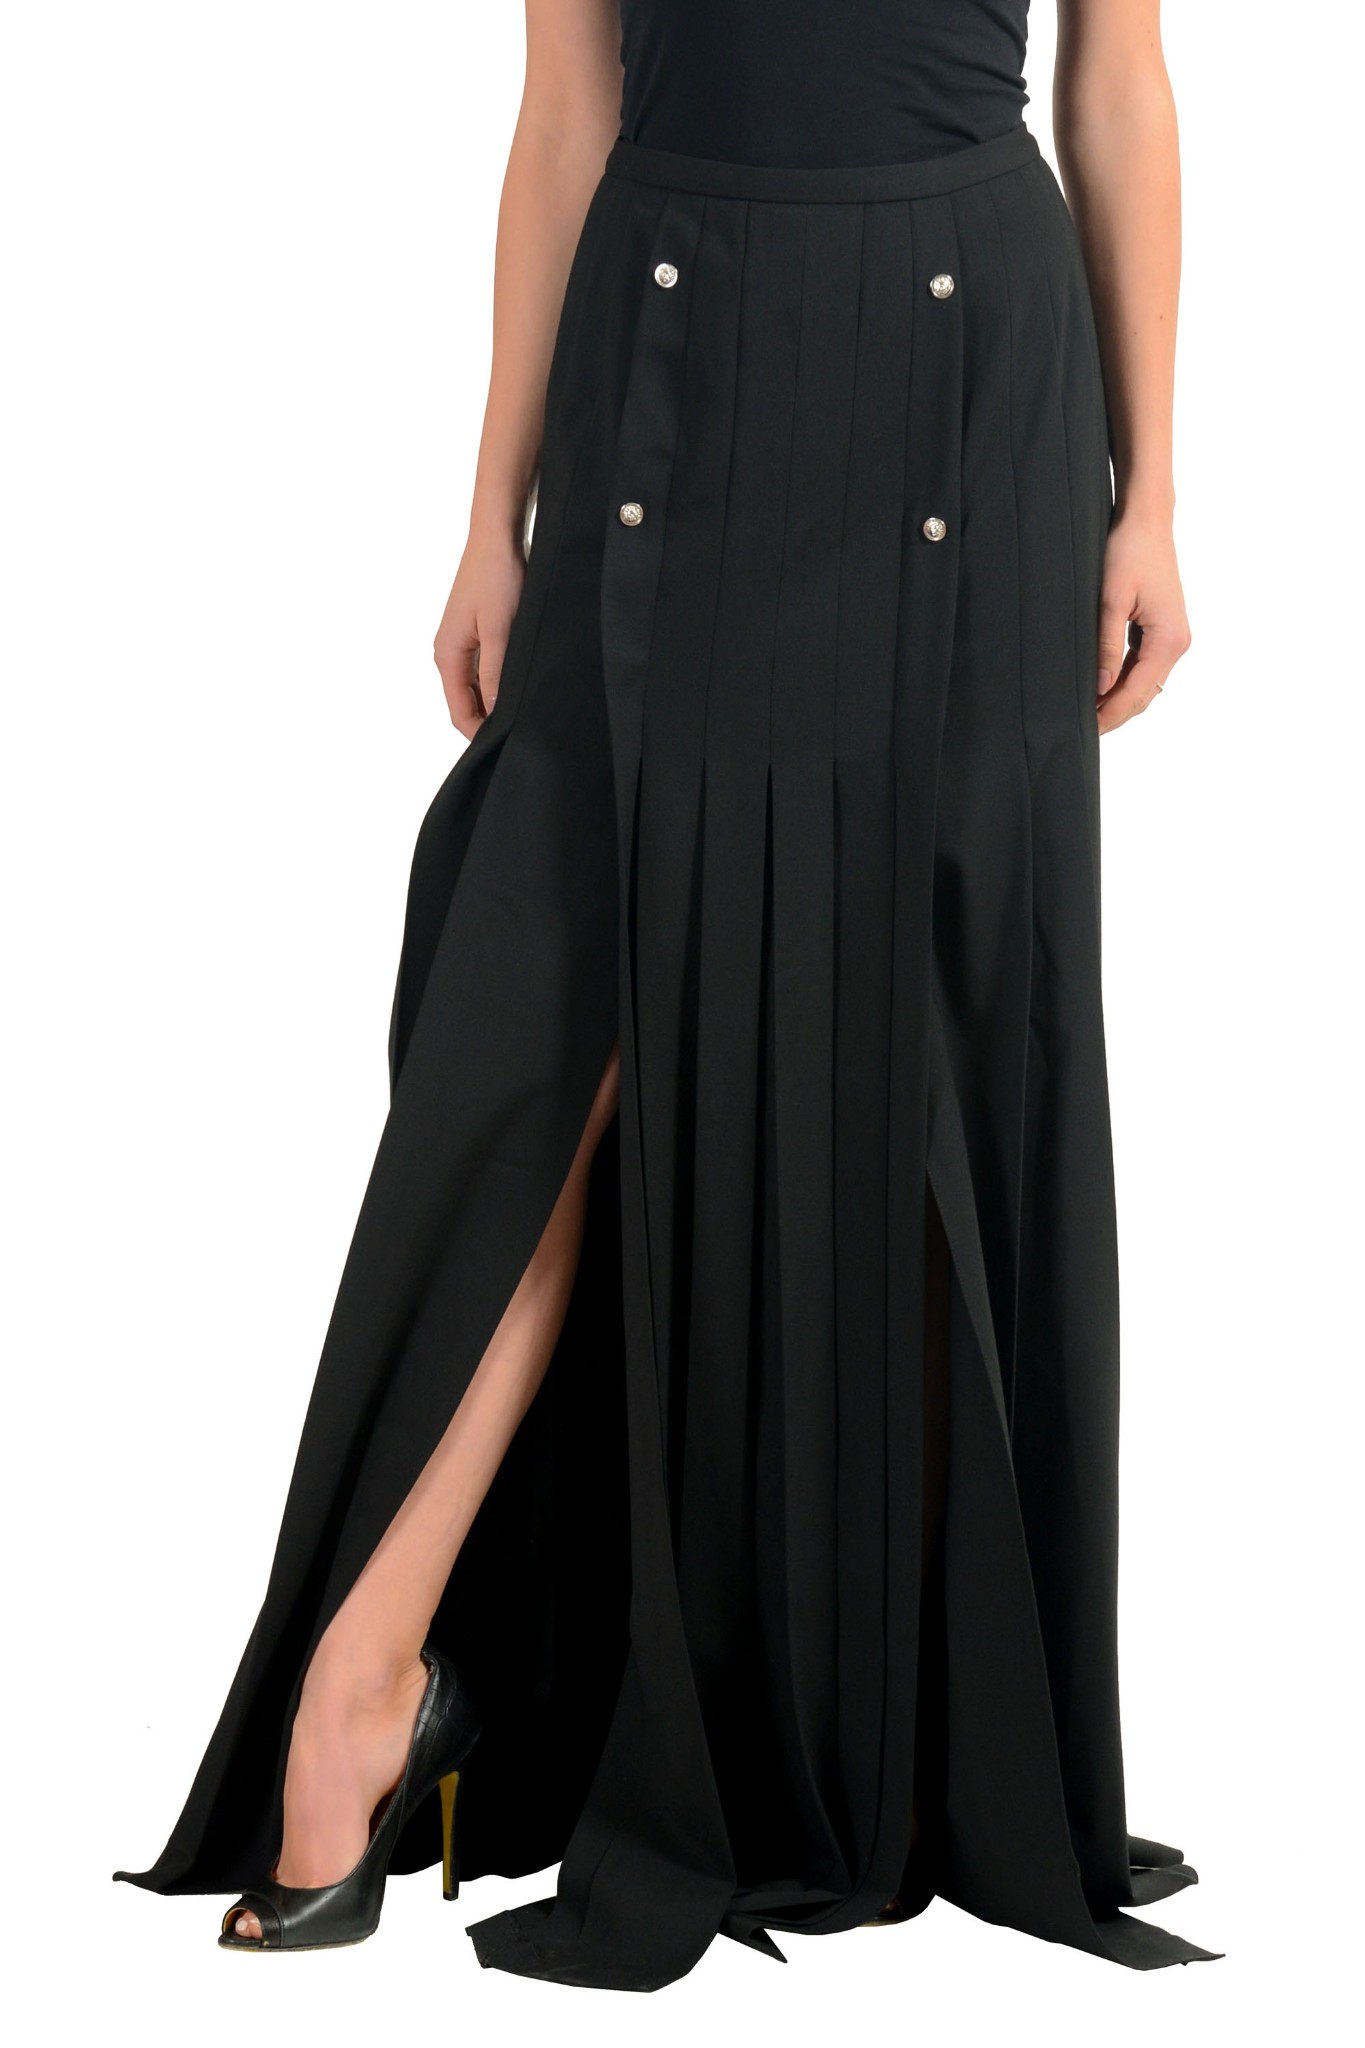 Versace Versus Wool Black Women's Maxi Skirt Sz XS S | eBay